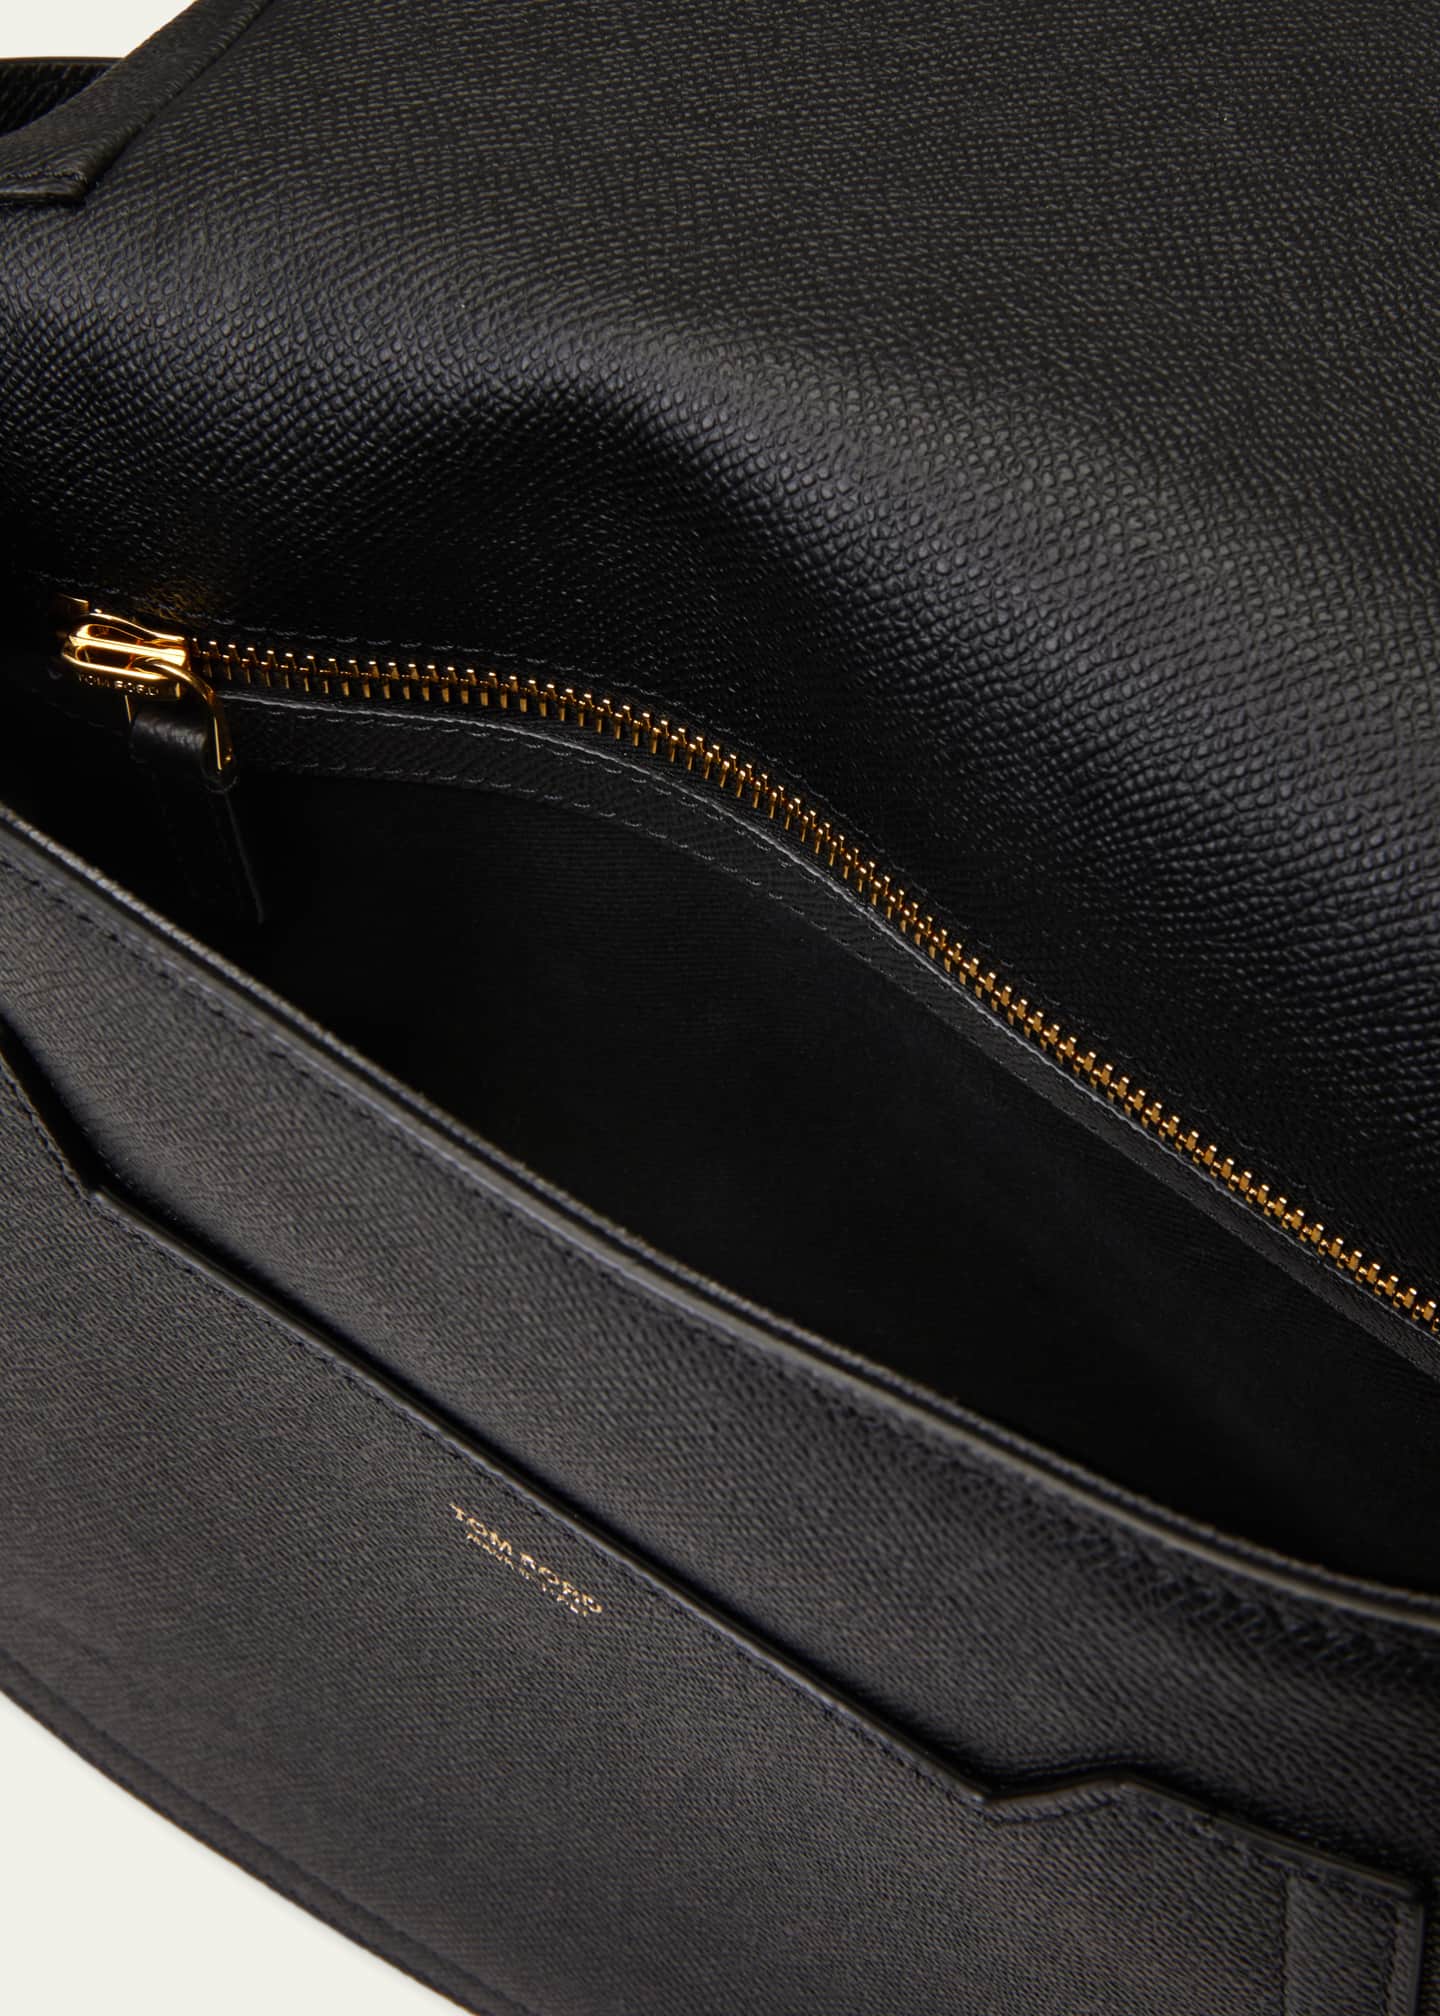 TOM FORD Medium Jennifer Grained Leather Shoulder Bag